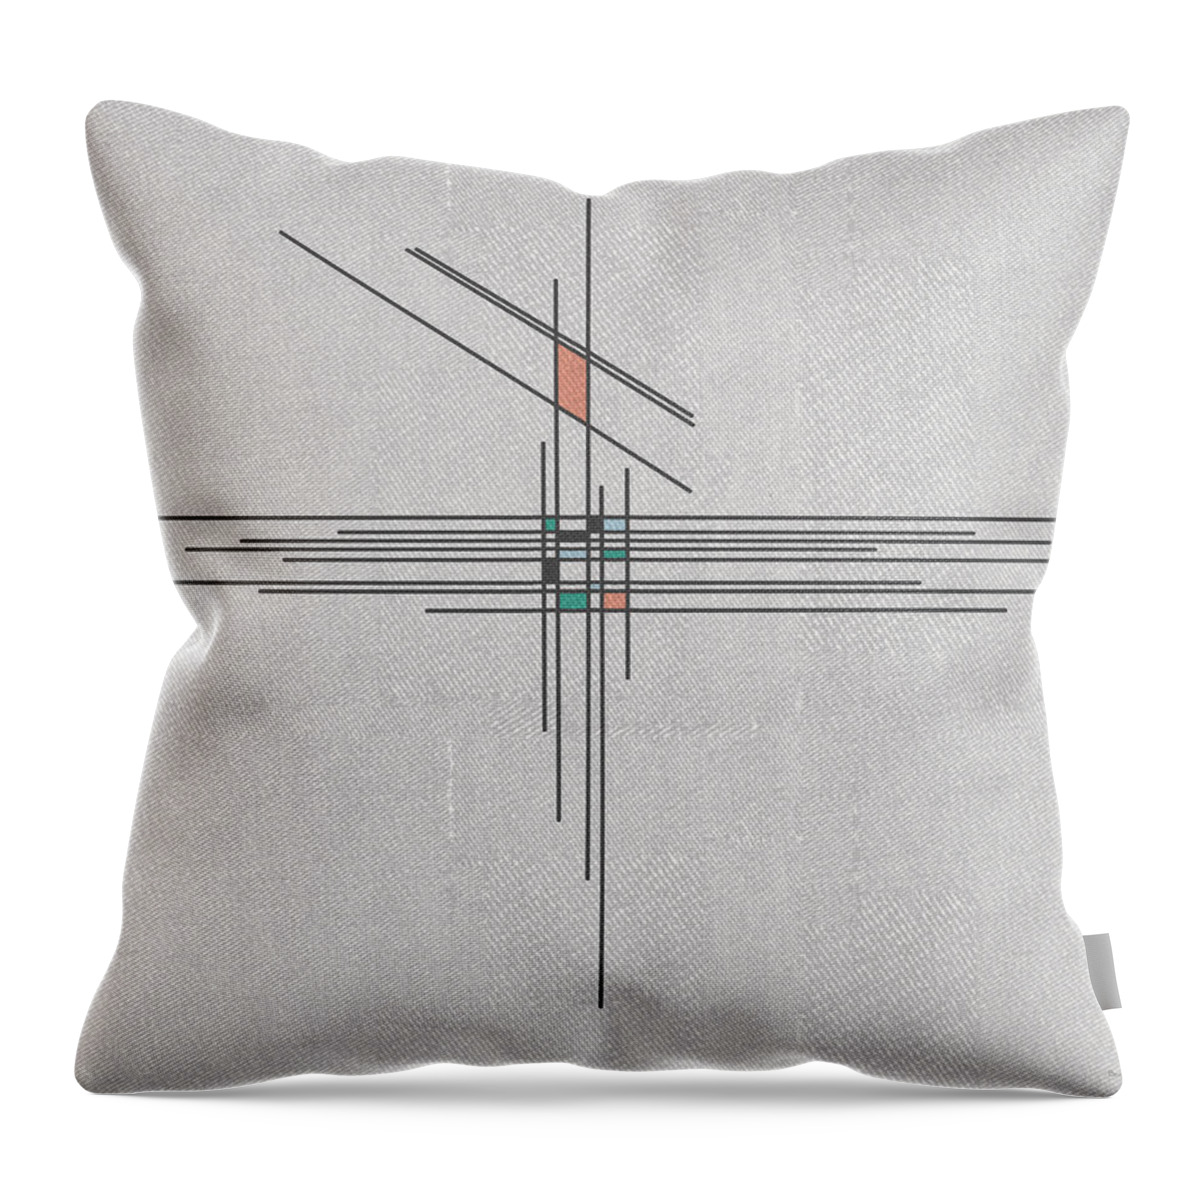 Geometric Throw Pillow featuring the digital art Tilt by Berlynn